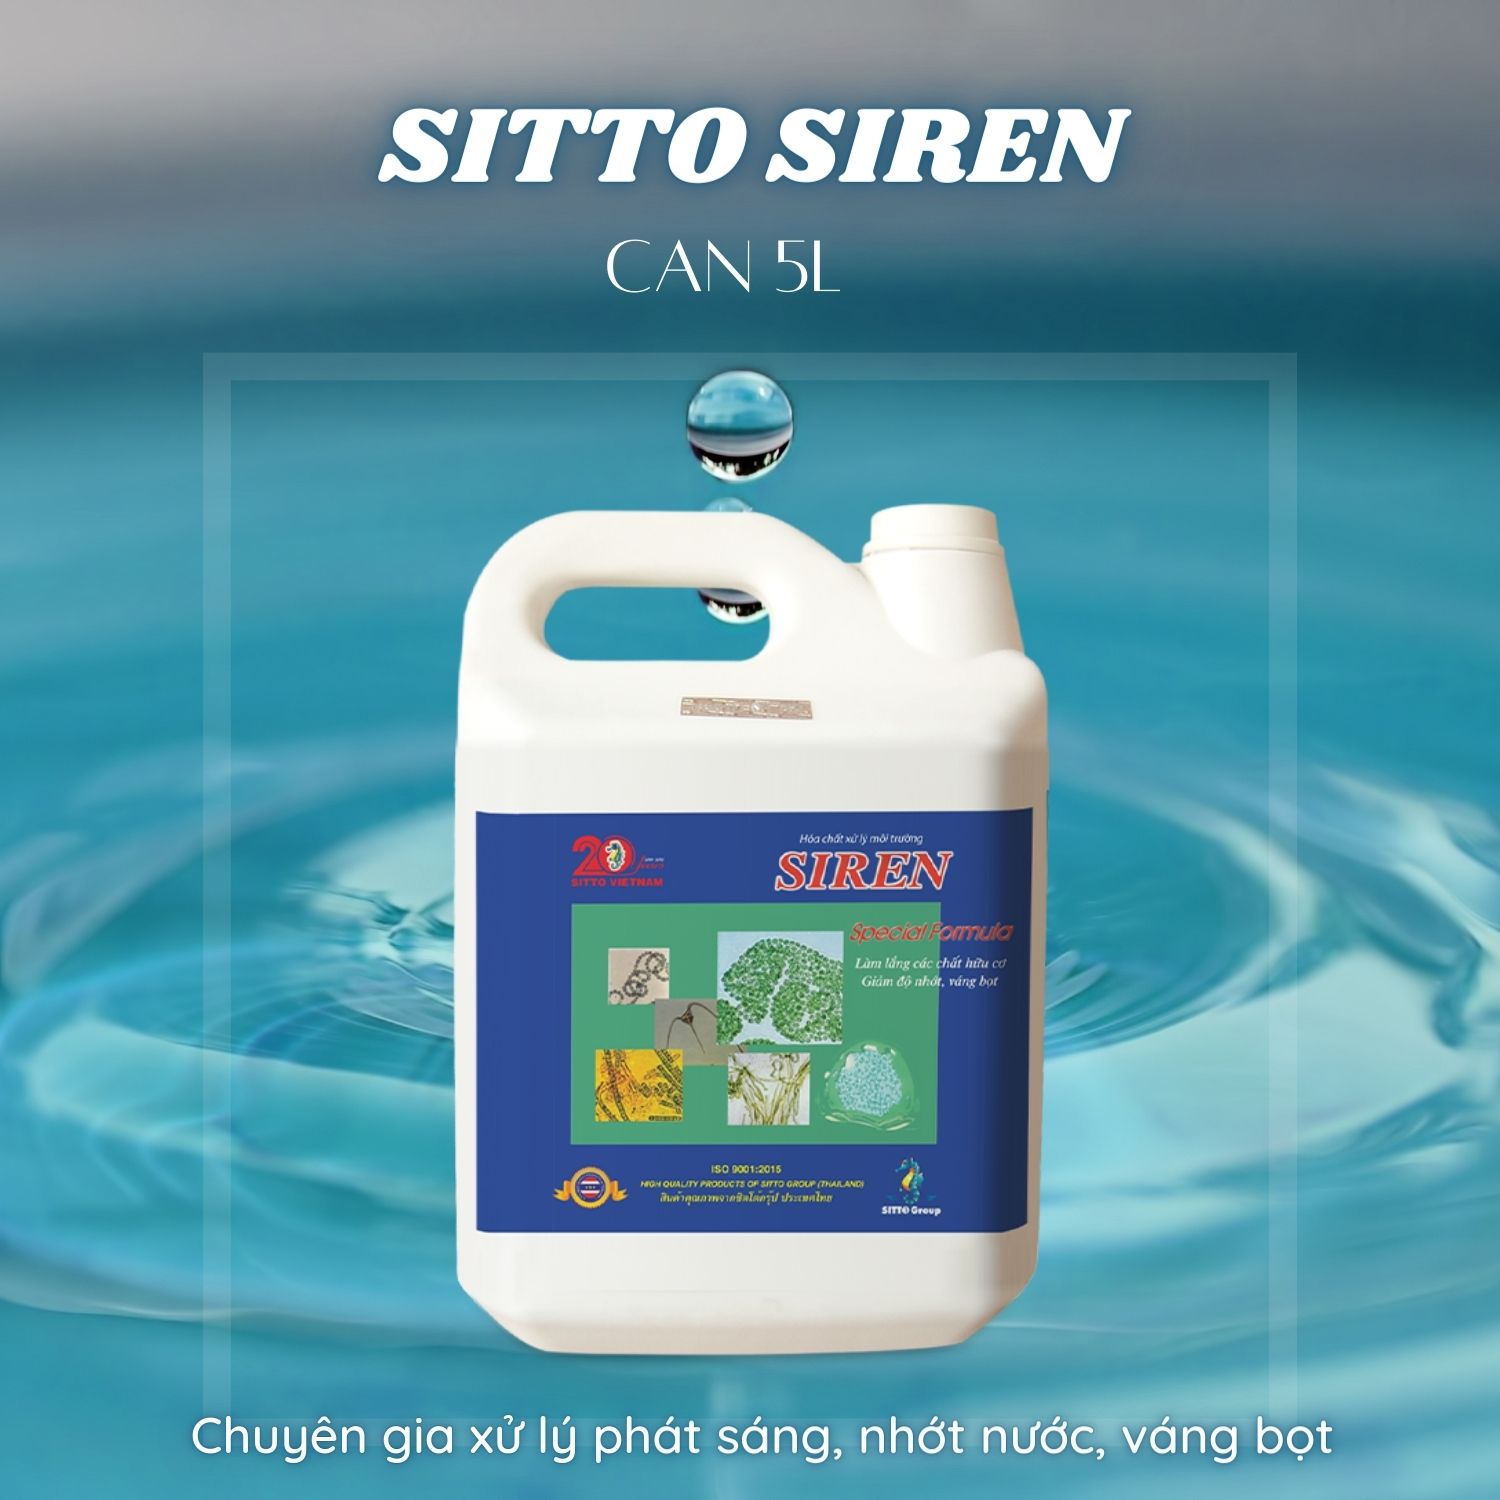 Hóa chất xử lý nước - Sitto Siren Can 5L - Chuyên gia xử lý phát sáng, nhớt nước, váng bọt